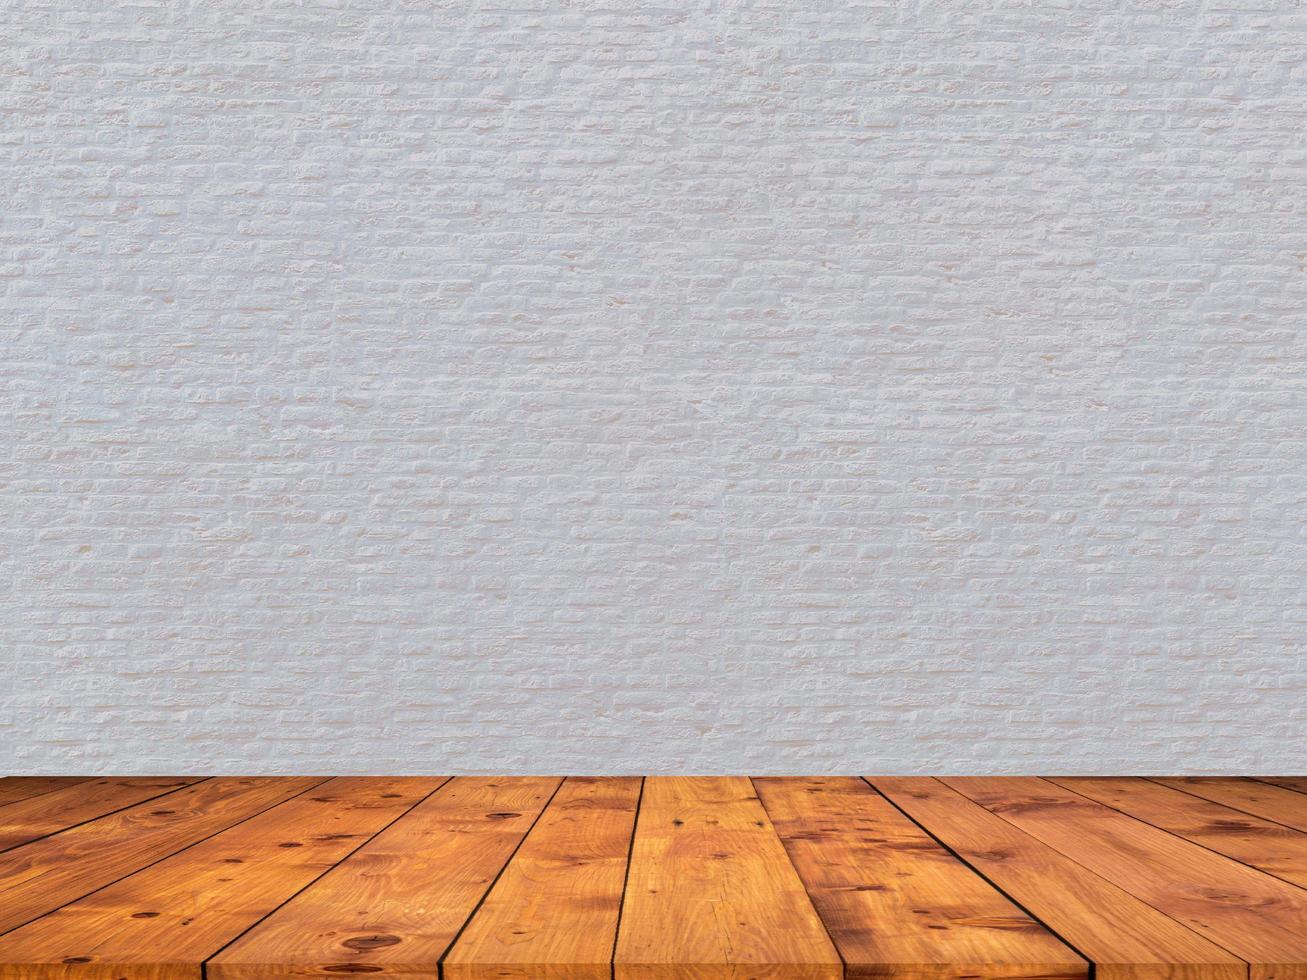 mur de briques blanches avec fond d'affichage de produit zoom plancher en bois photo